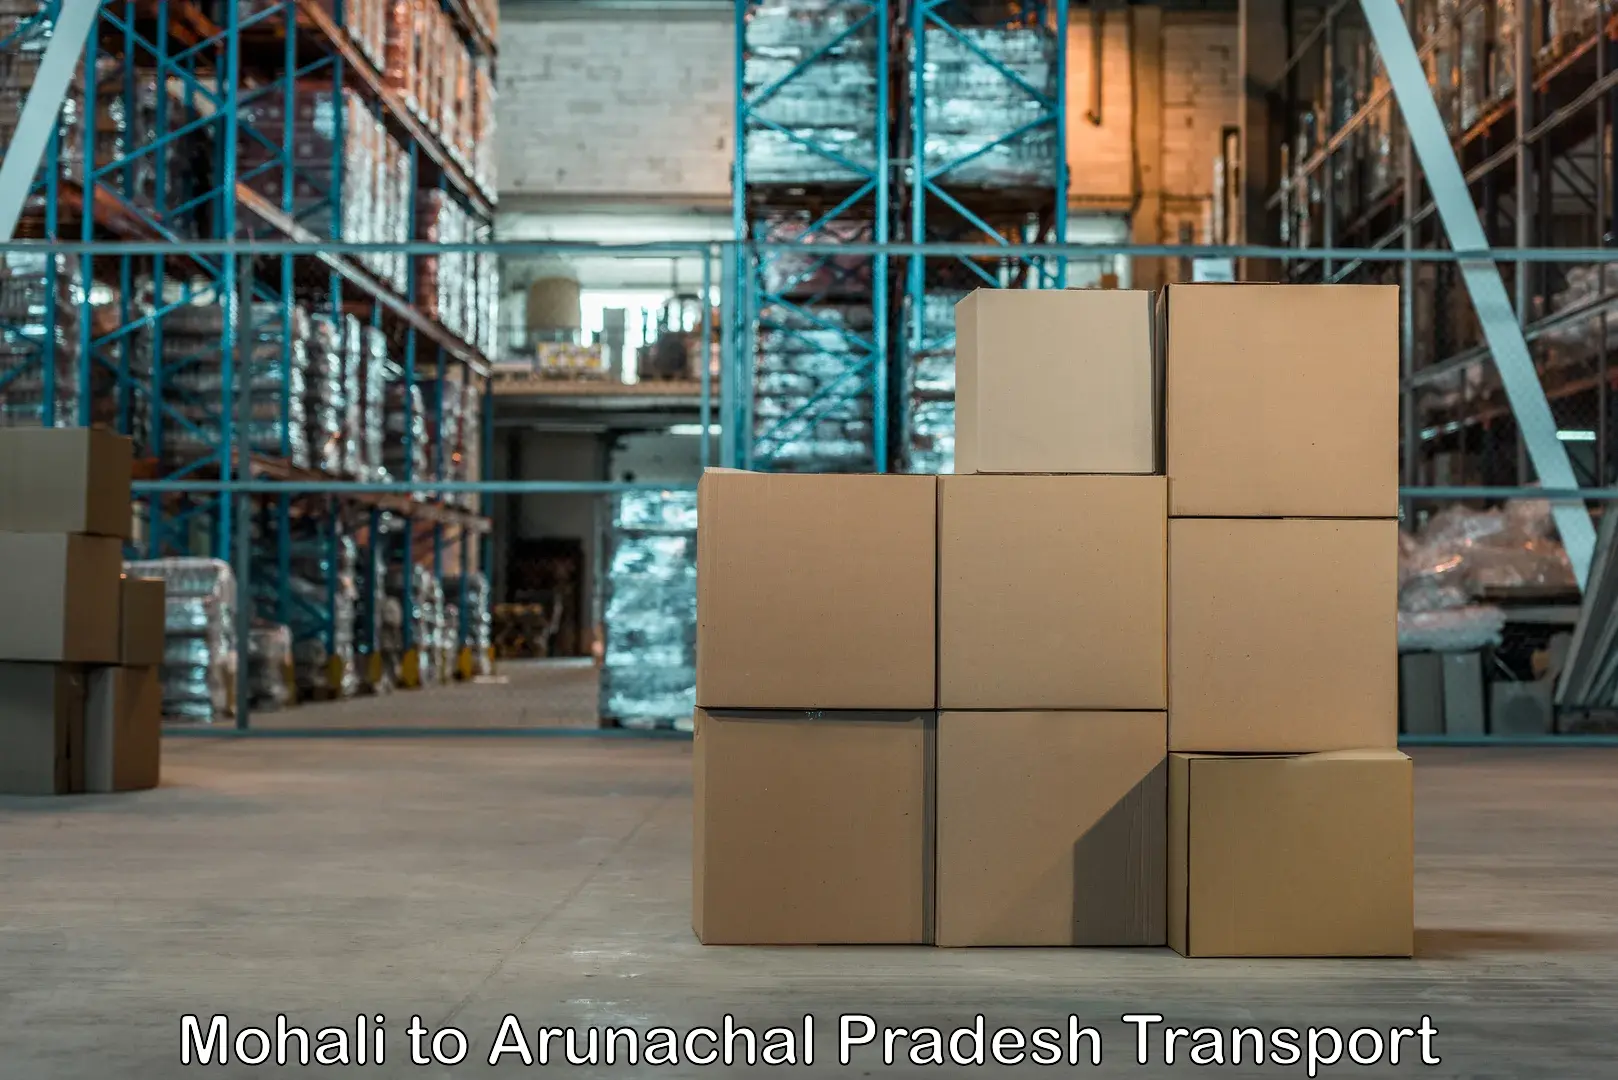 Cargo train transport services Mohali to Arunachal Pradesh